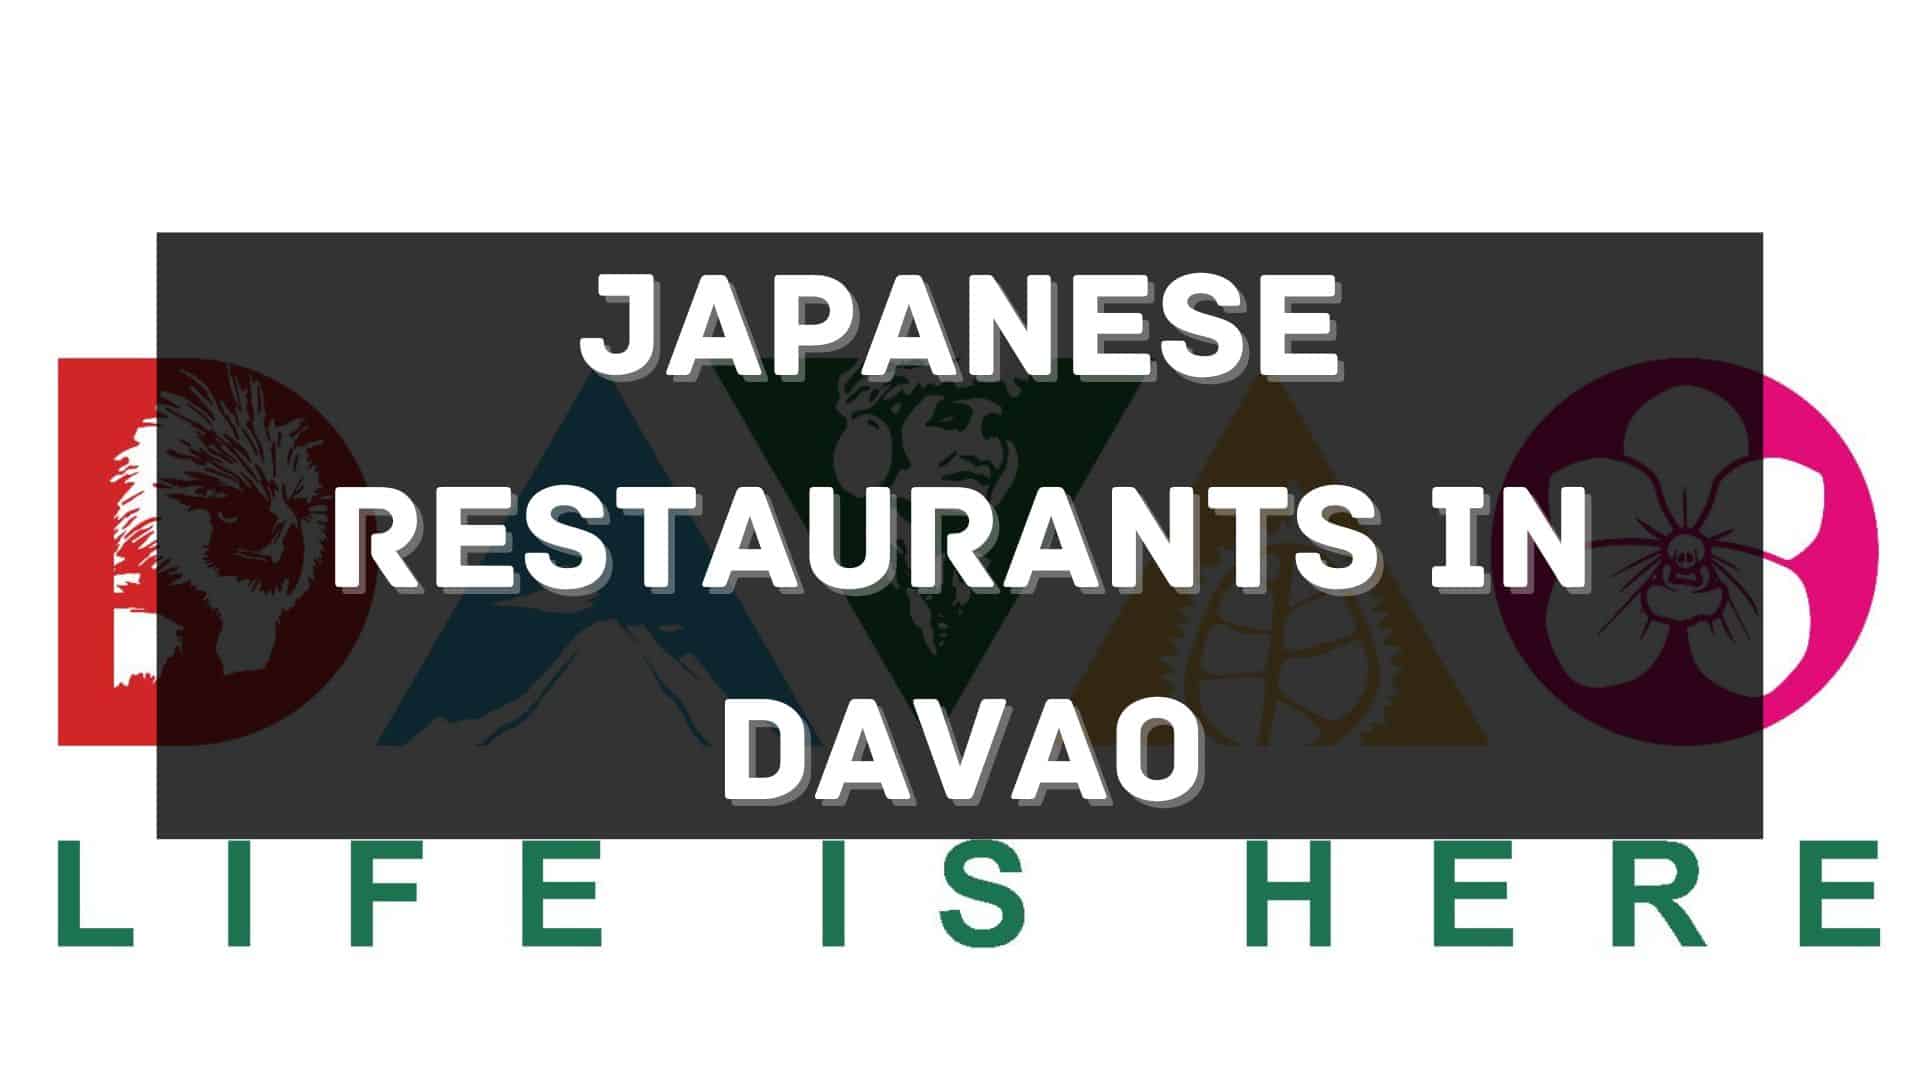 Japanese restaurants in Davao